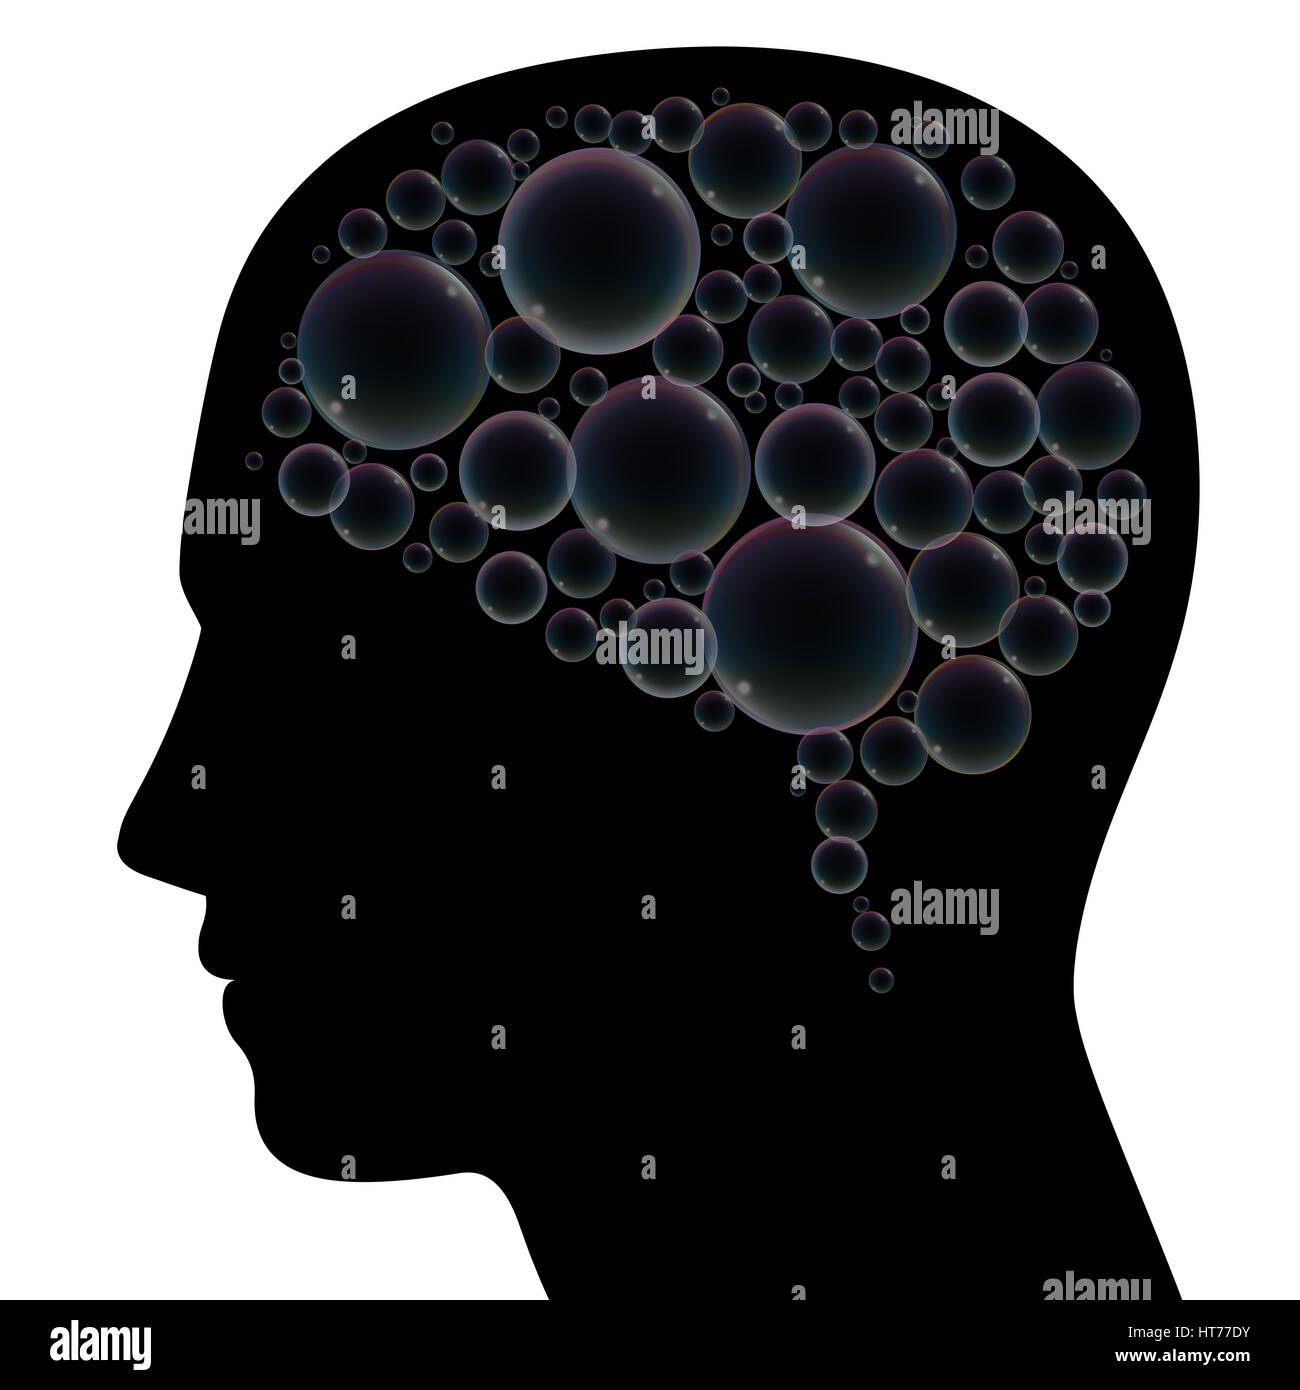 Seifenblasen statt Gehirn in einen menschlichen Kopf, als Symbol für Phantasie, Träume, Mattigkeit, Verwirrung, Depression, Demenz oder Stress. Stockfoto